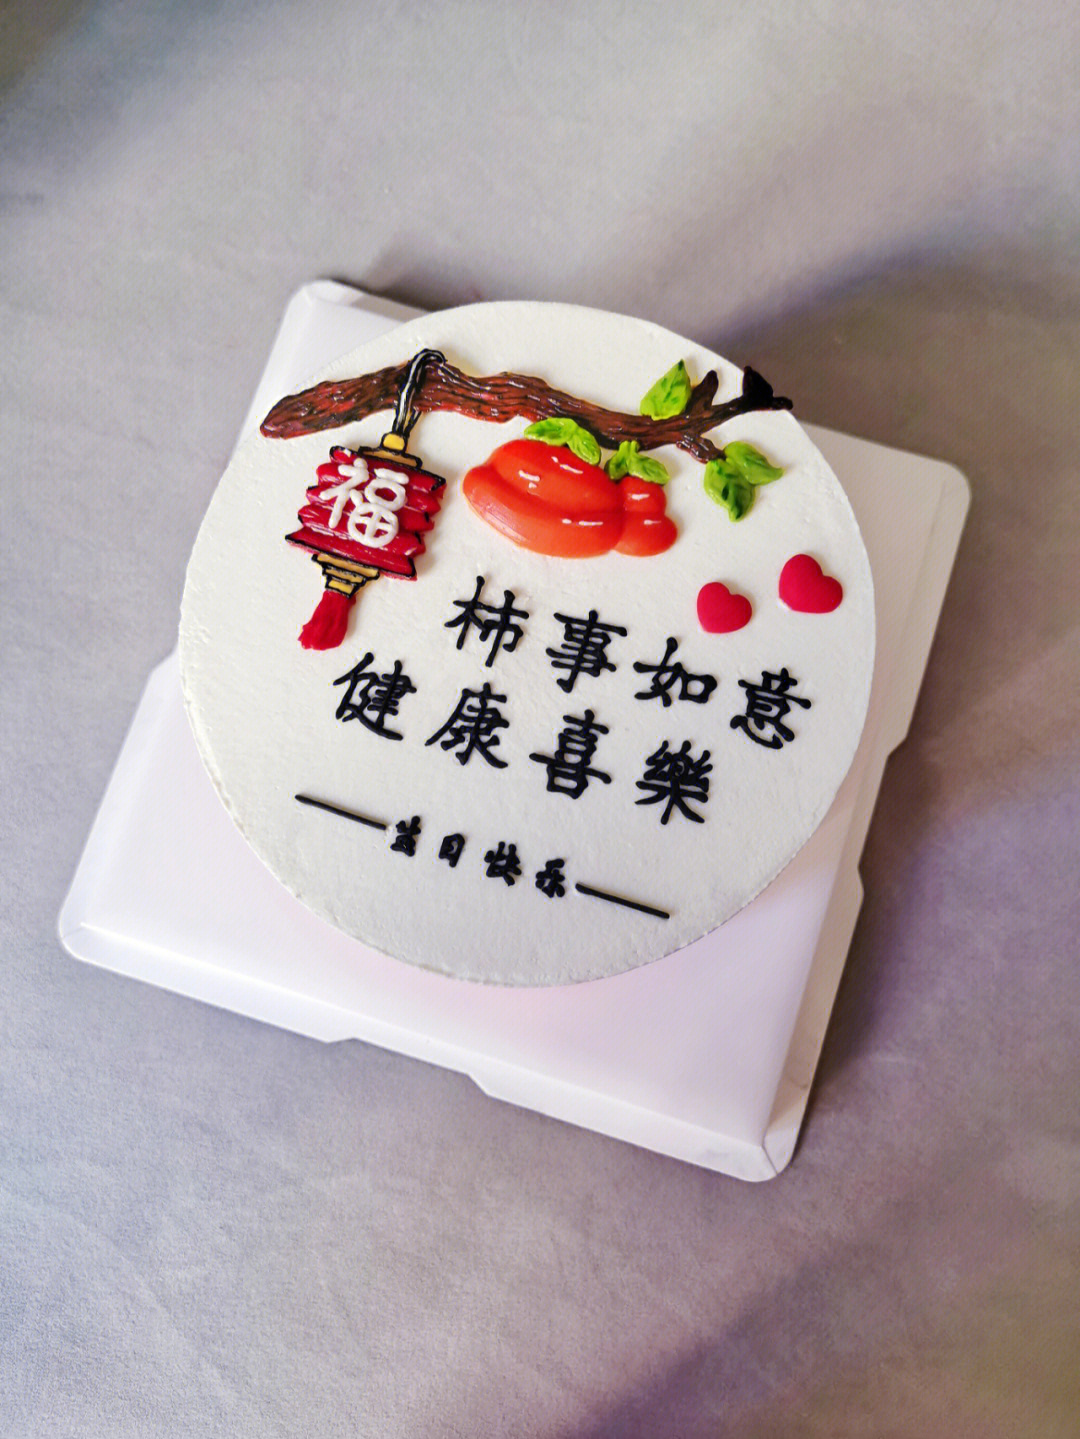 哈尔滨柿柿如意蛋糕